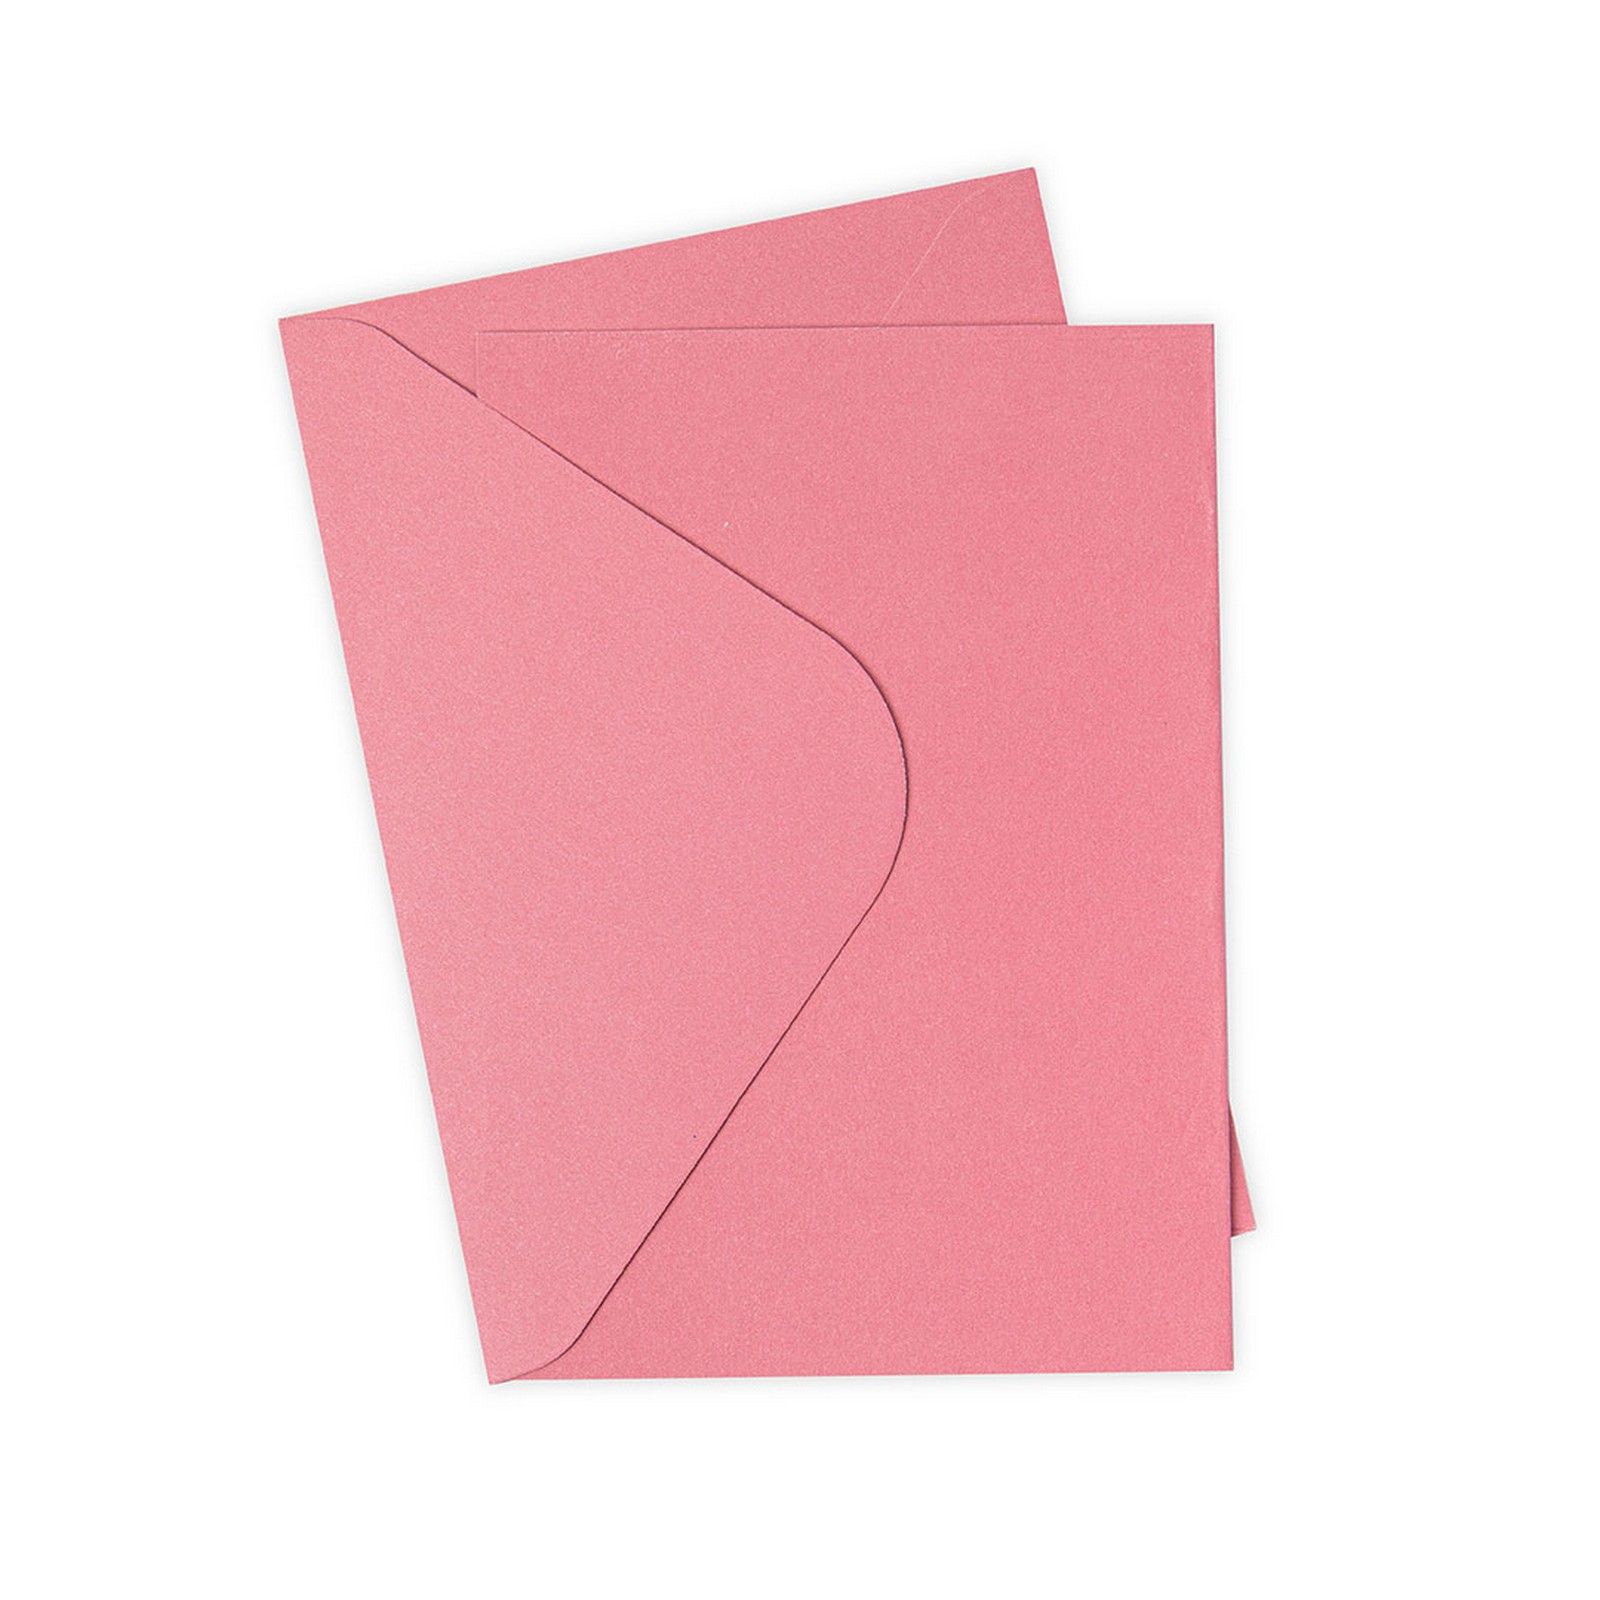 Sizzix • Paquete de tarjetas y sobres Surfacez A6, rosa, 10 unidades